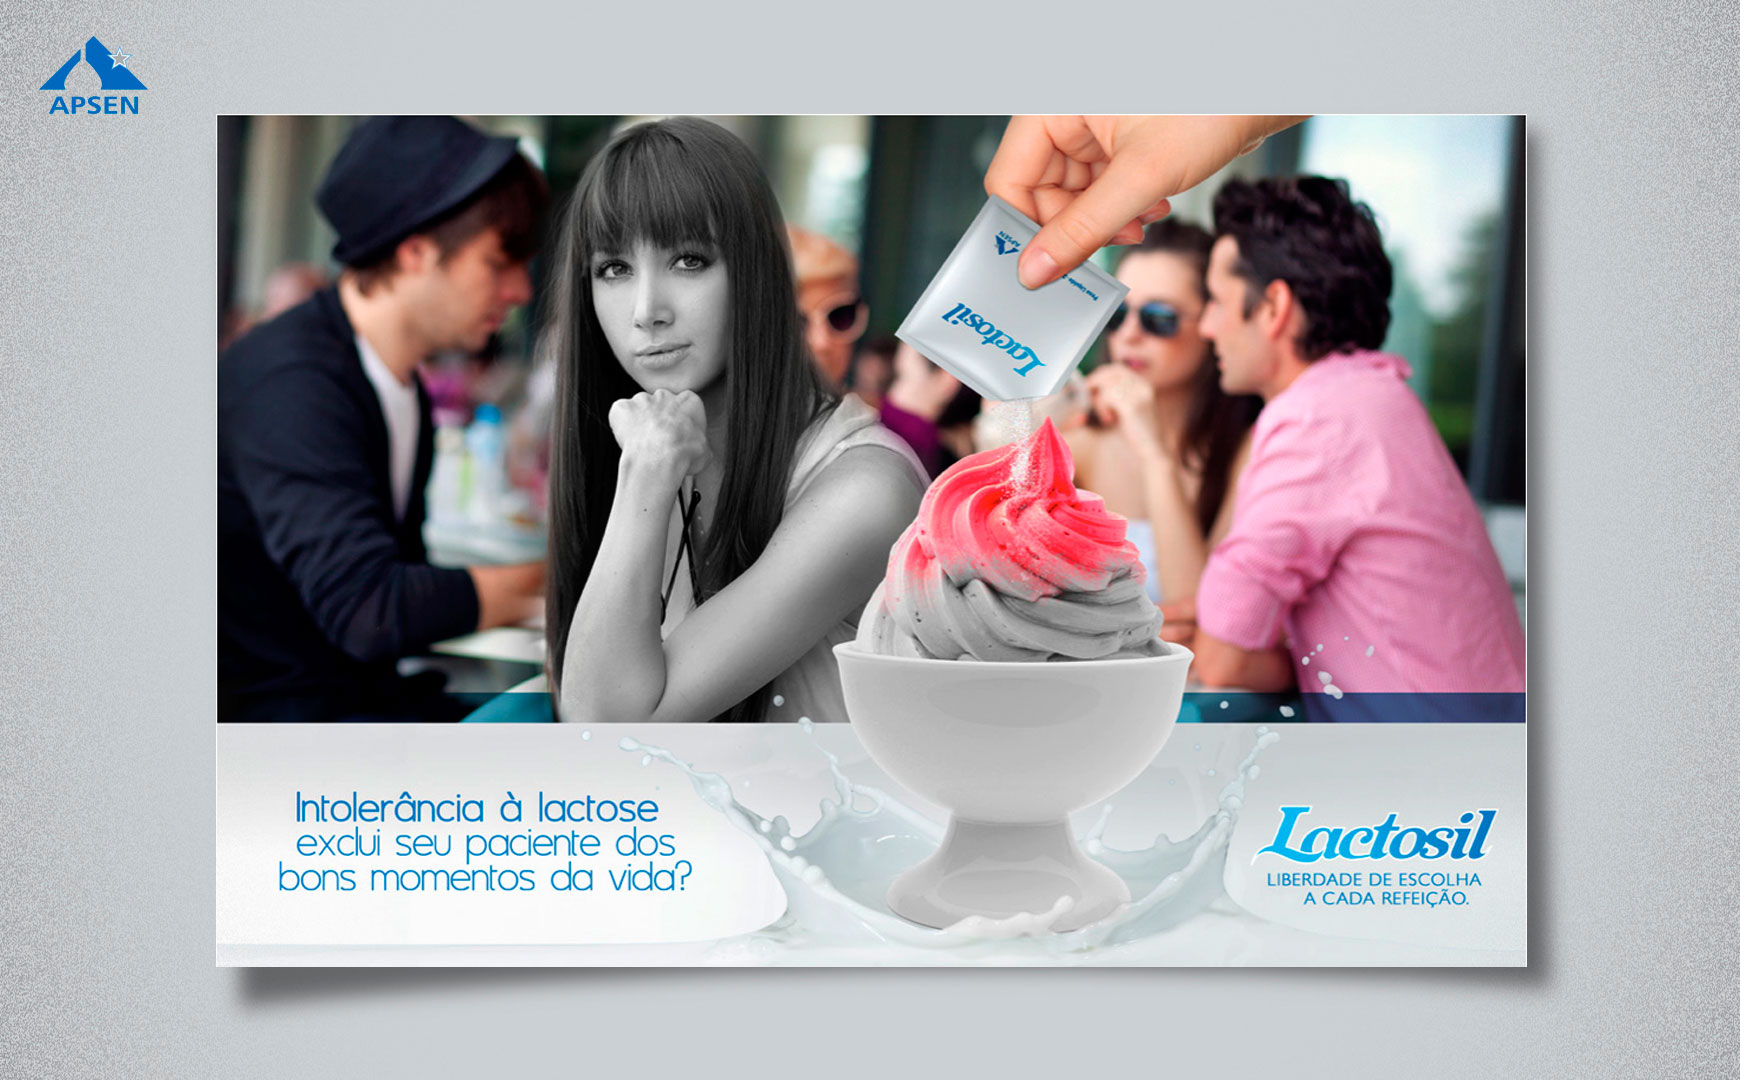 Lactosil Apsen - Portifolio Creative Edition